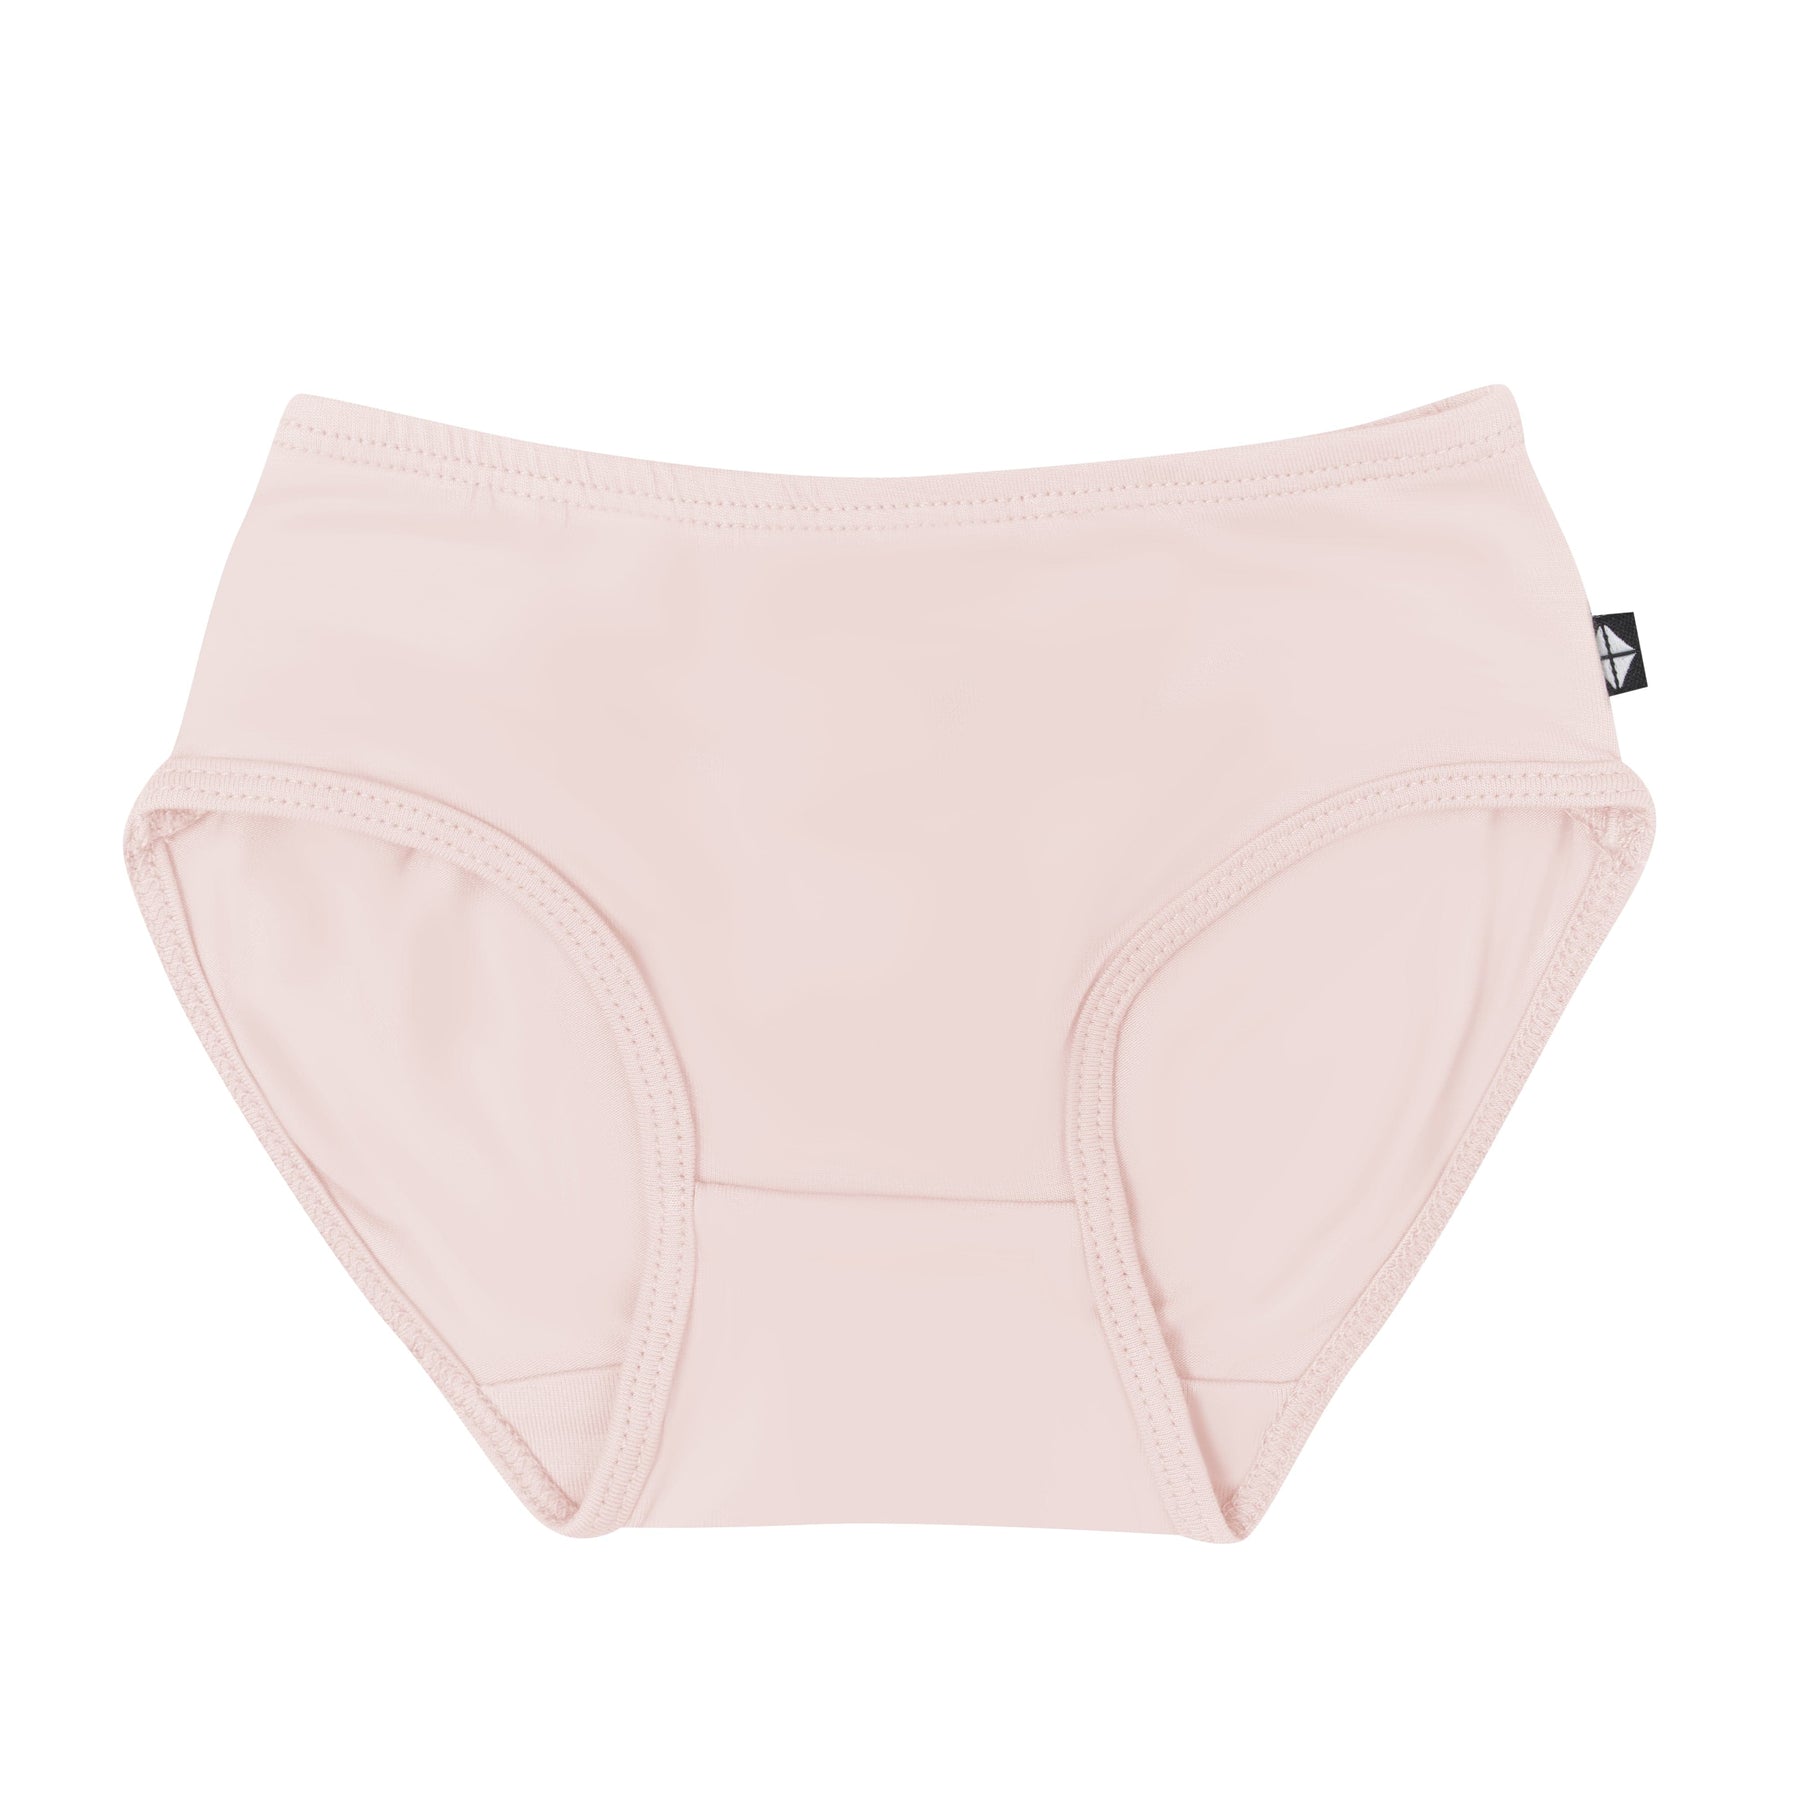 https://kytebaby.com/cdn/shop/files/kyte-baby-underwear-undies-in-blush-32434928091247_1800x.jpg?v=1690574645